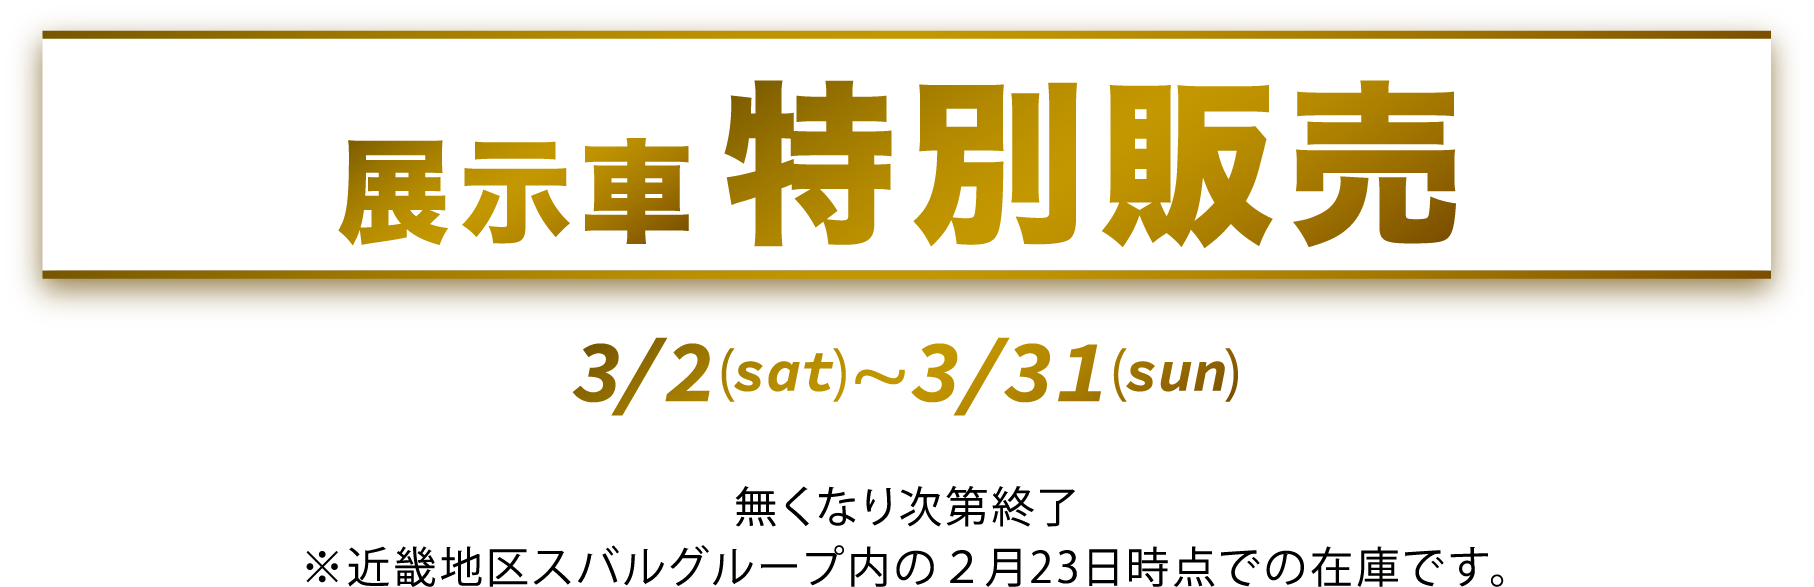 展示車特別販売 3/2(sat)〜3/31(sun) 無くなり次第終了 ※近畿地区スバルグループ内の2月23日時点での在庫です。